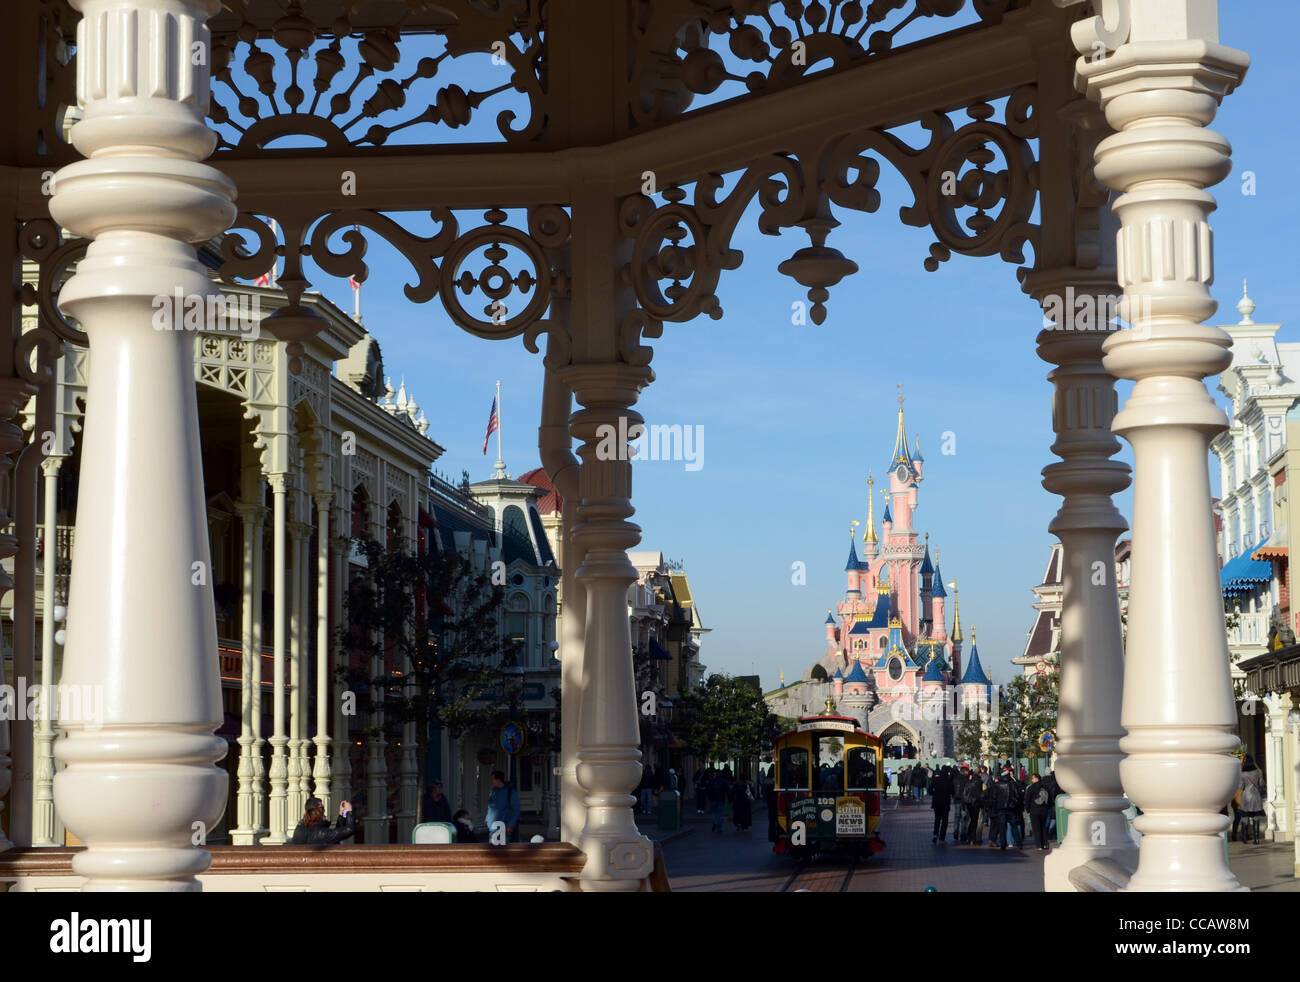 À l'intérieur du parc Disneyland près de Paris, France. Banque D'Images